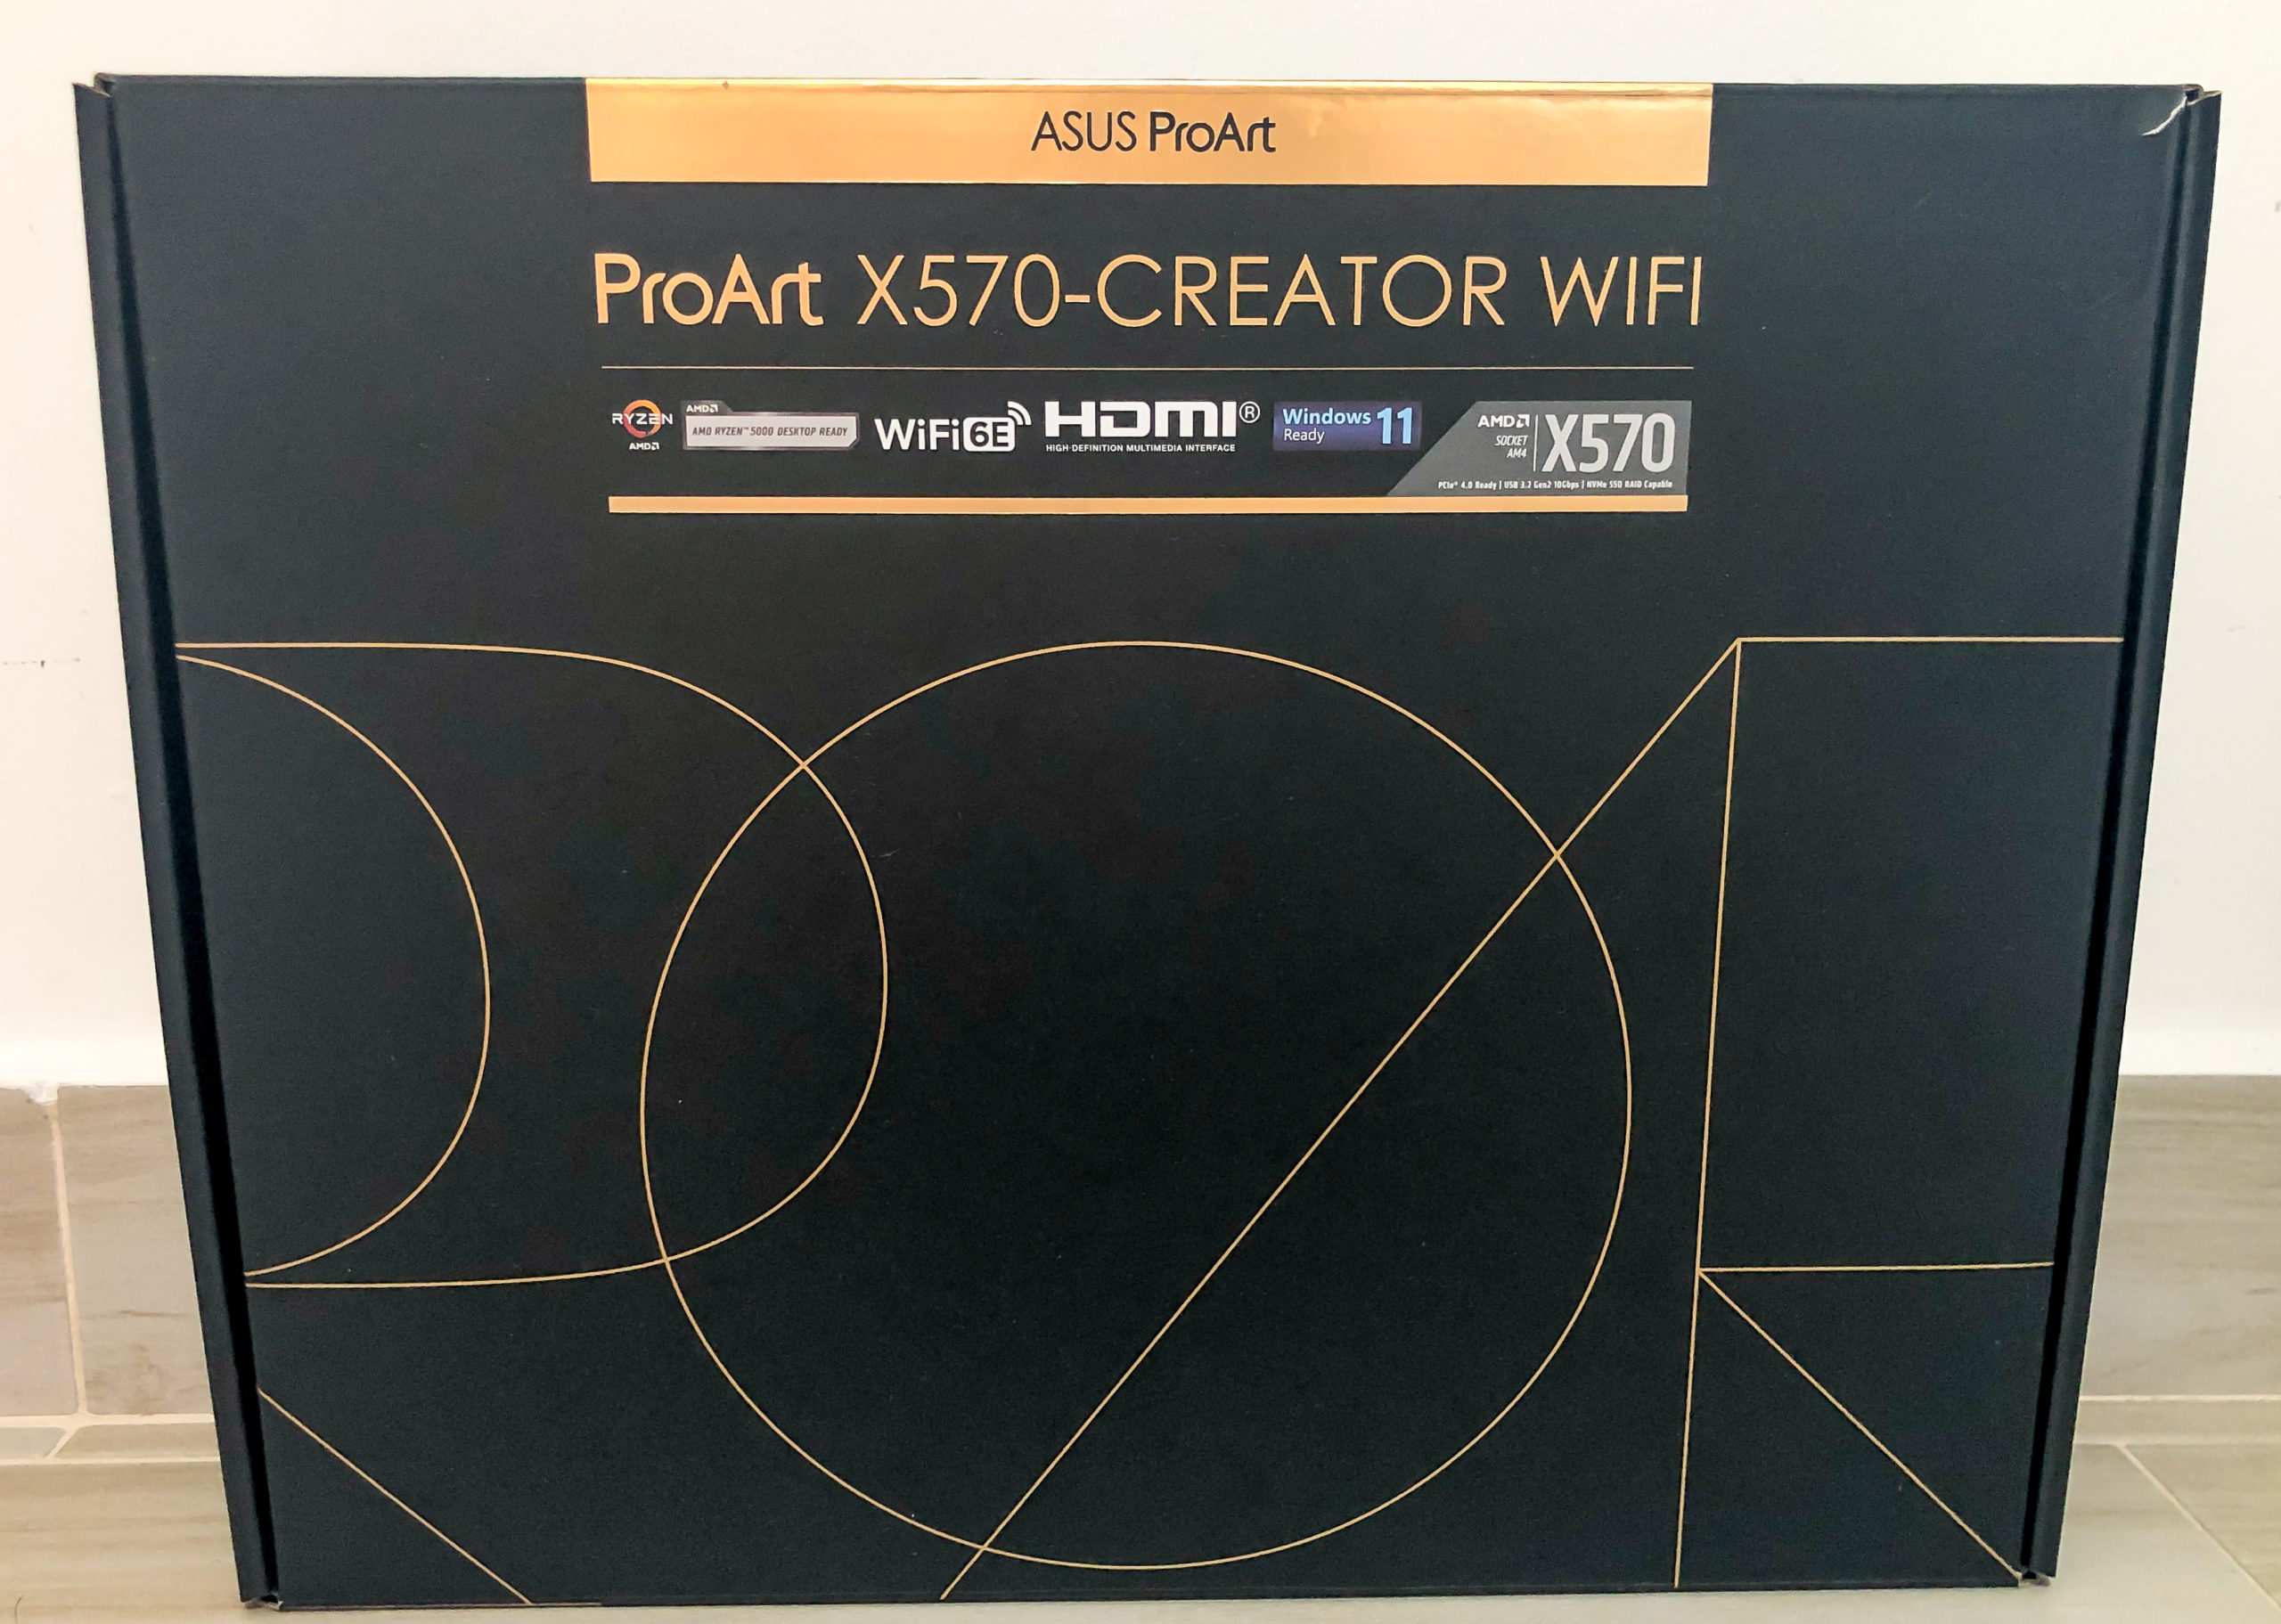 ASUS ProArt X570 Creator WiFi